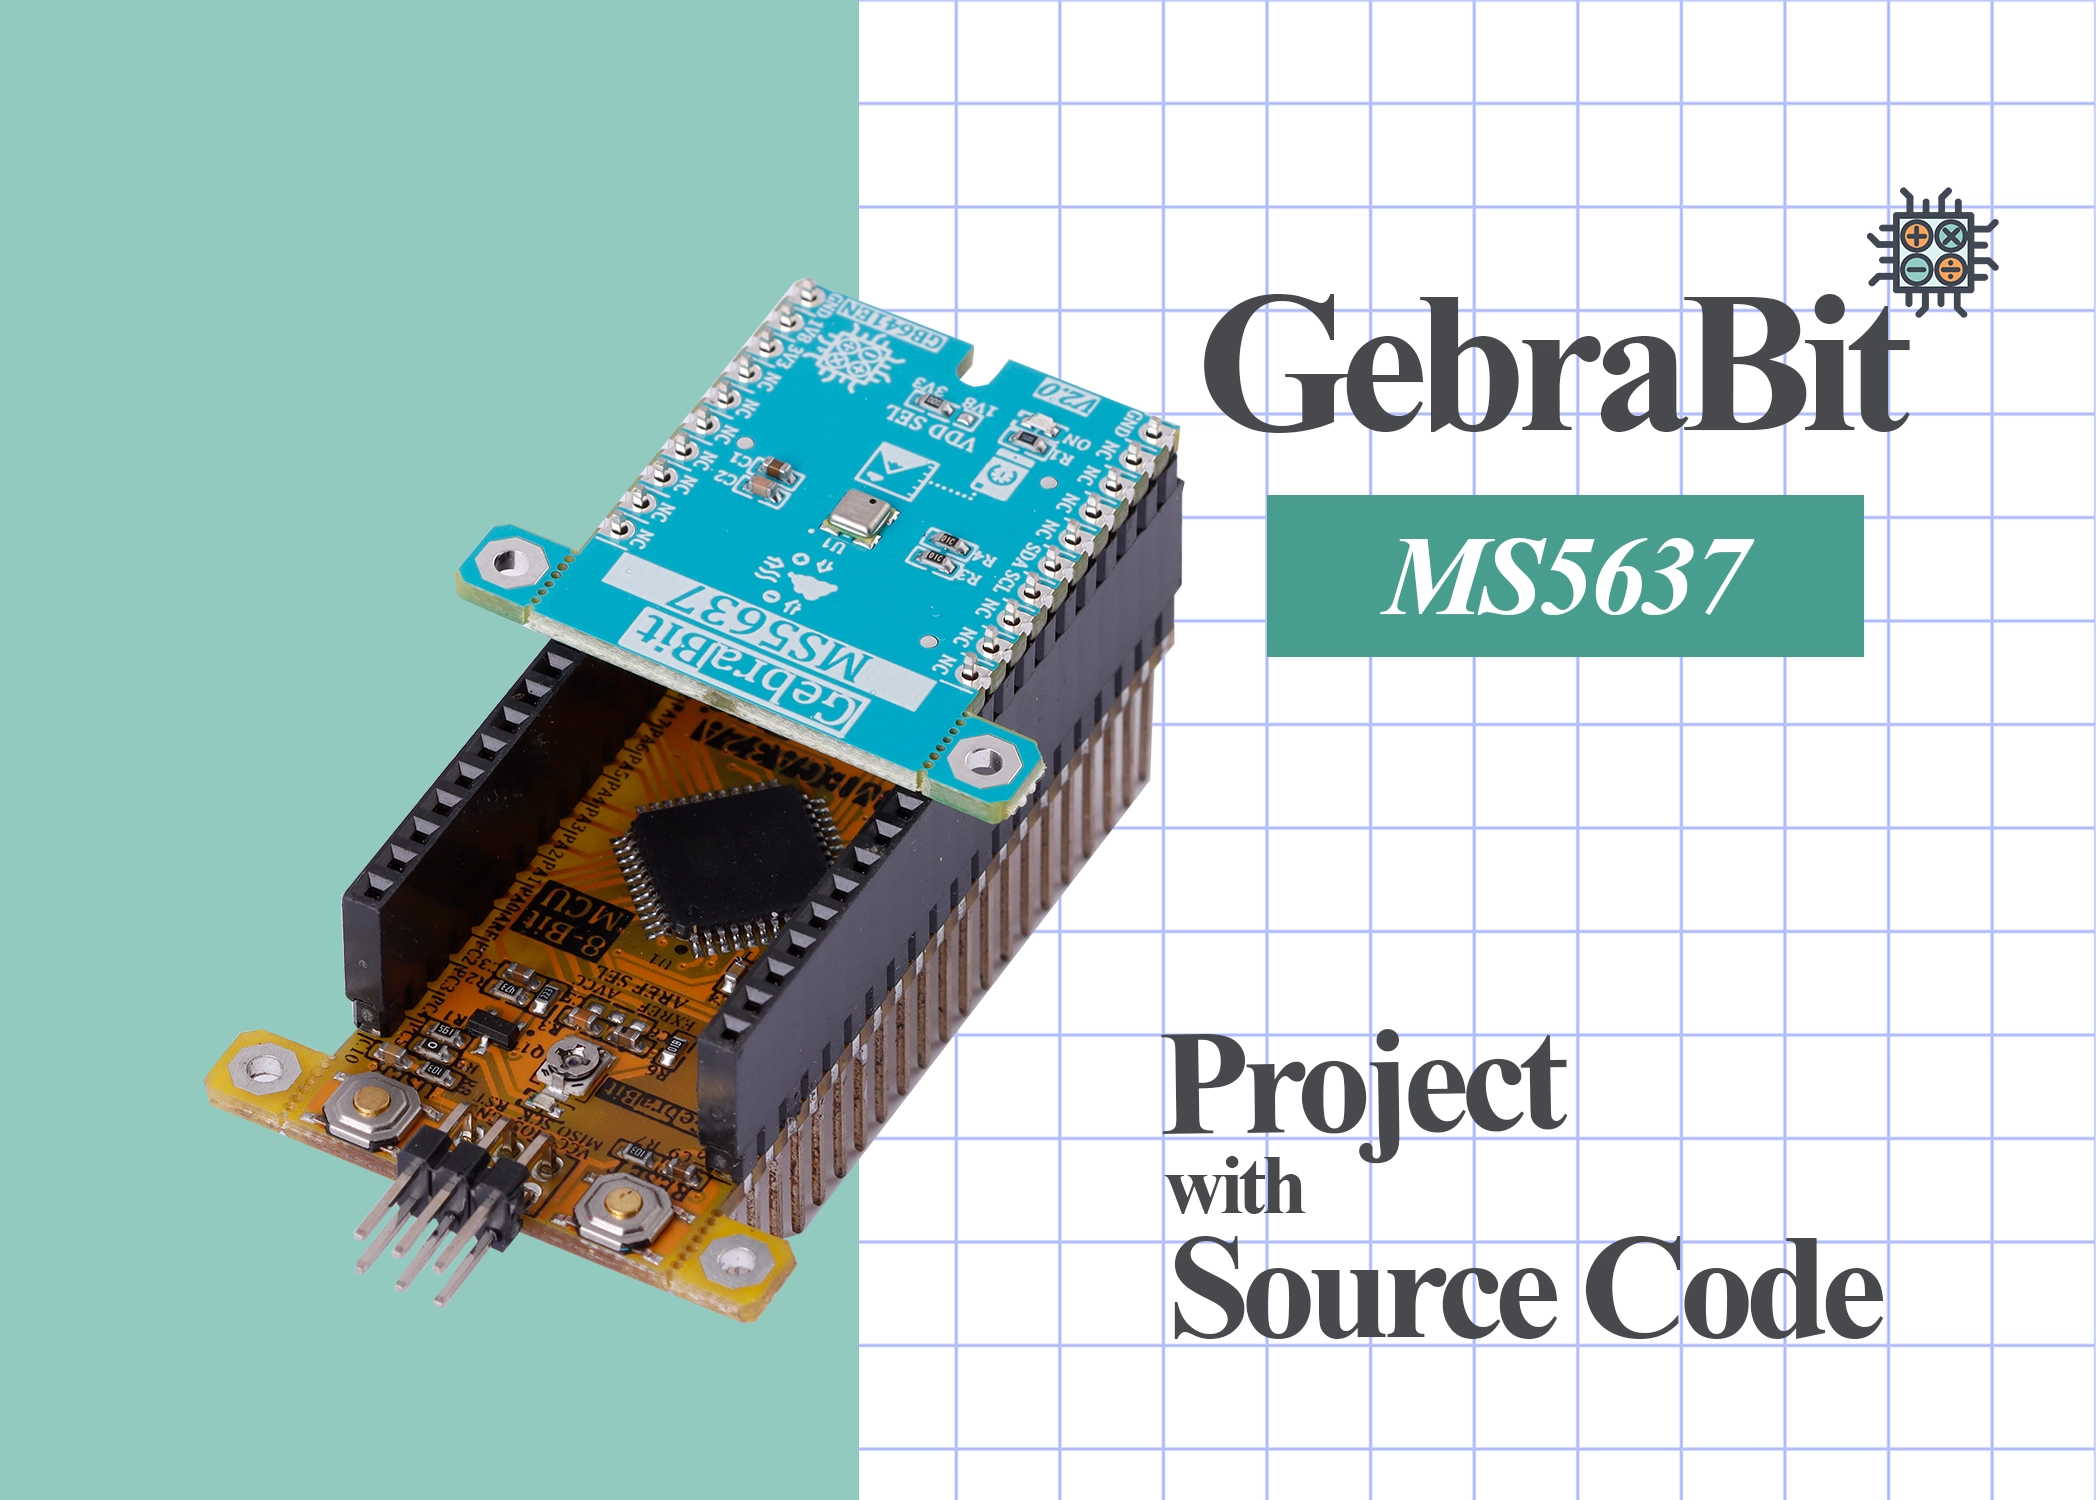 MS5637 gebrabit project